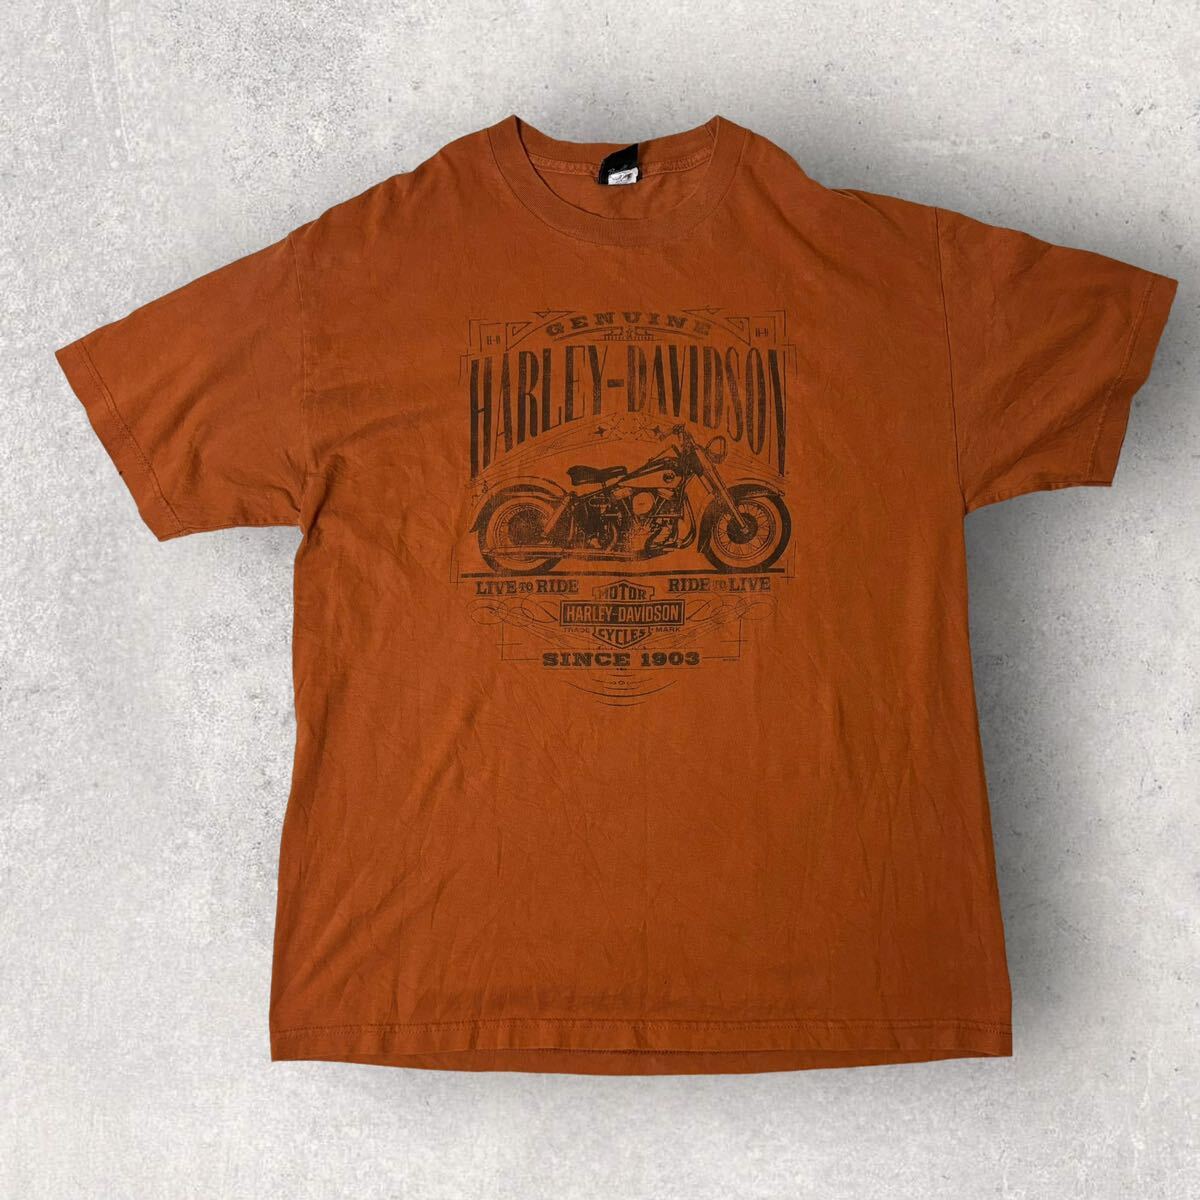 Harley-Davidson Harley Davidson Mexico производства 2014 футболка ROUTE 66 orange короткий рукав XL соответствует б/у одежда .